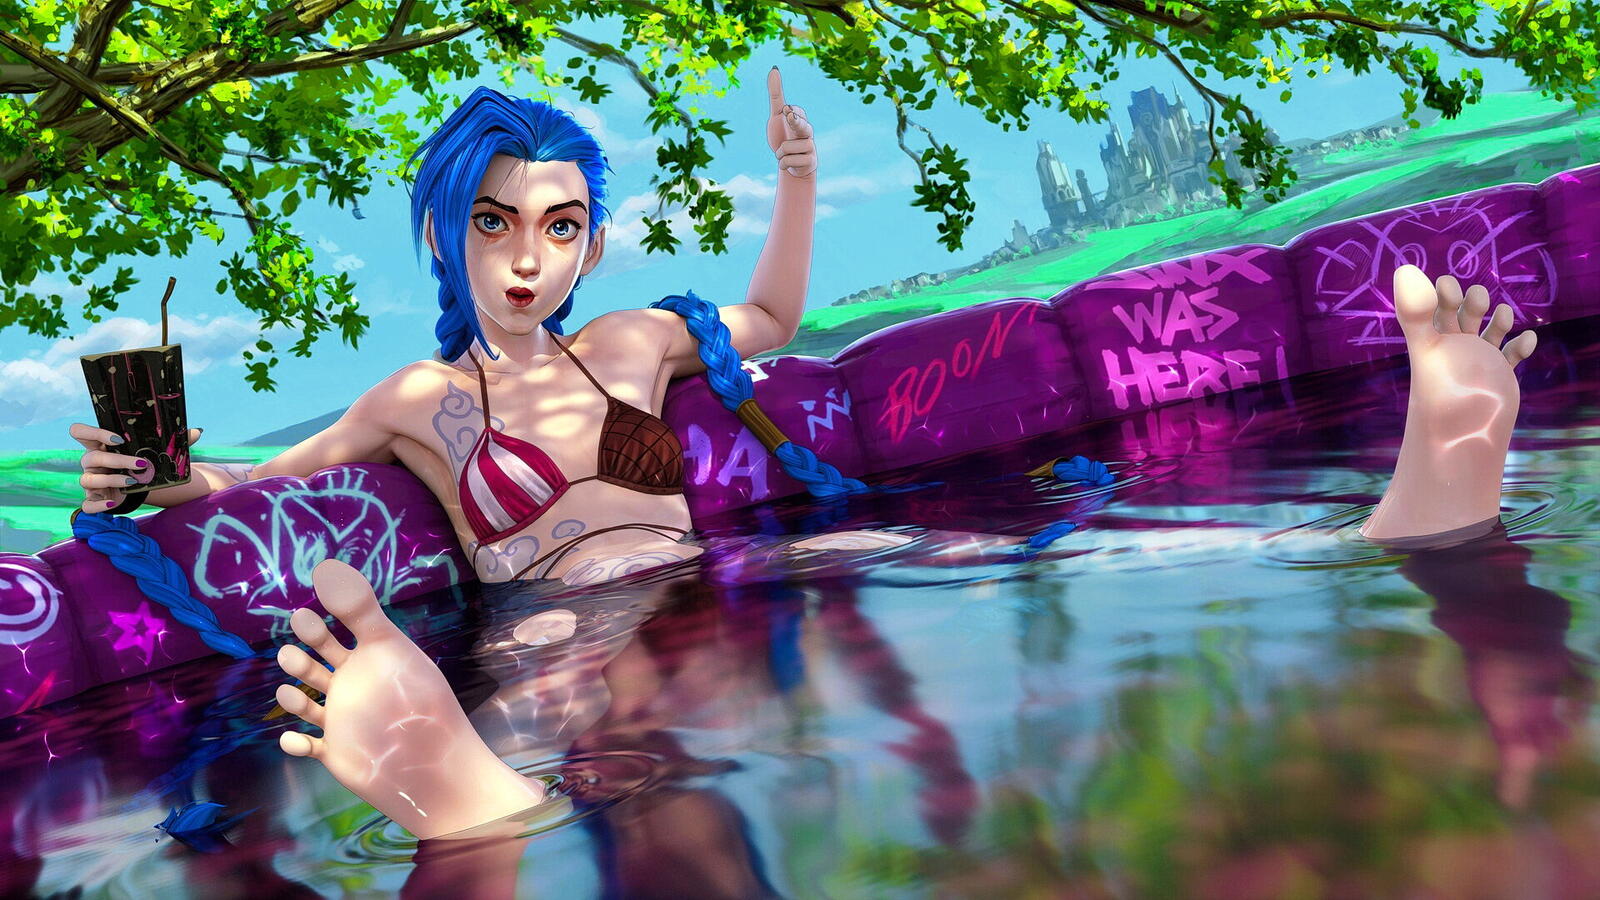 Девушка с синими волосами сидит в бассейне и держит стакан в руке